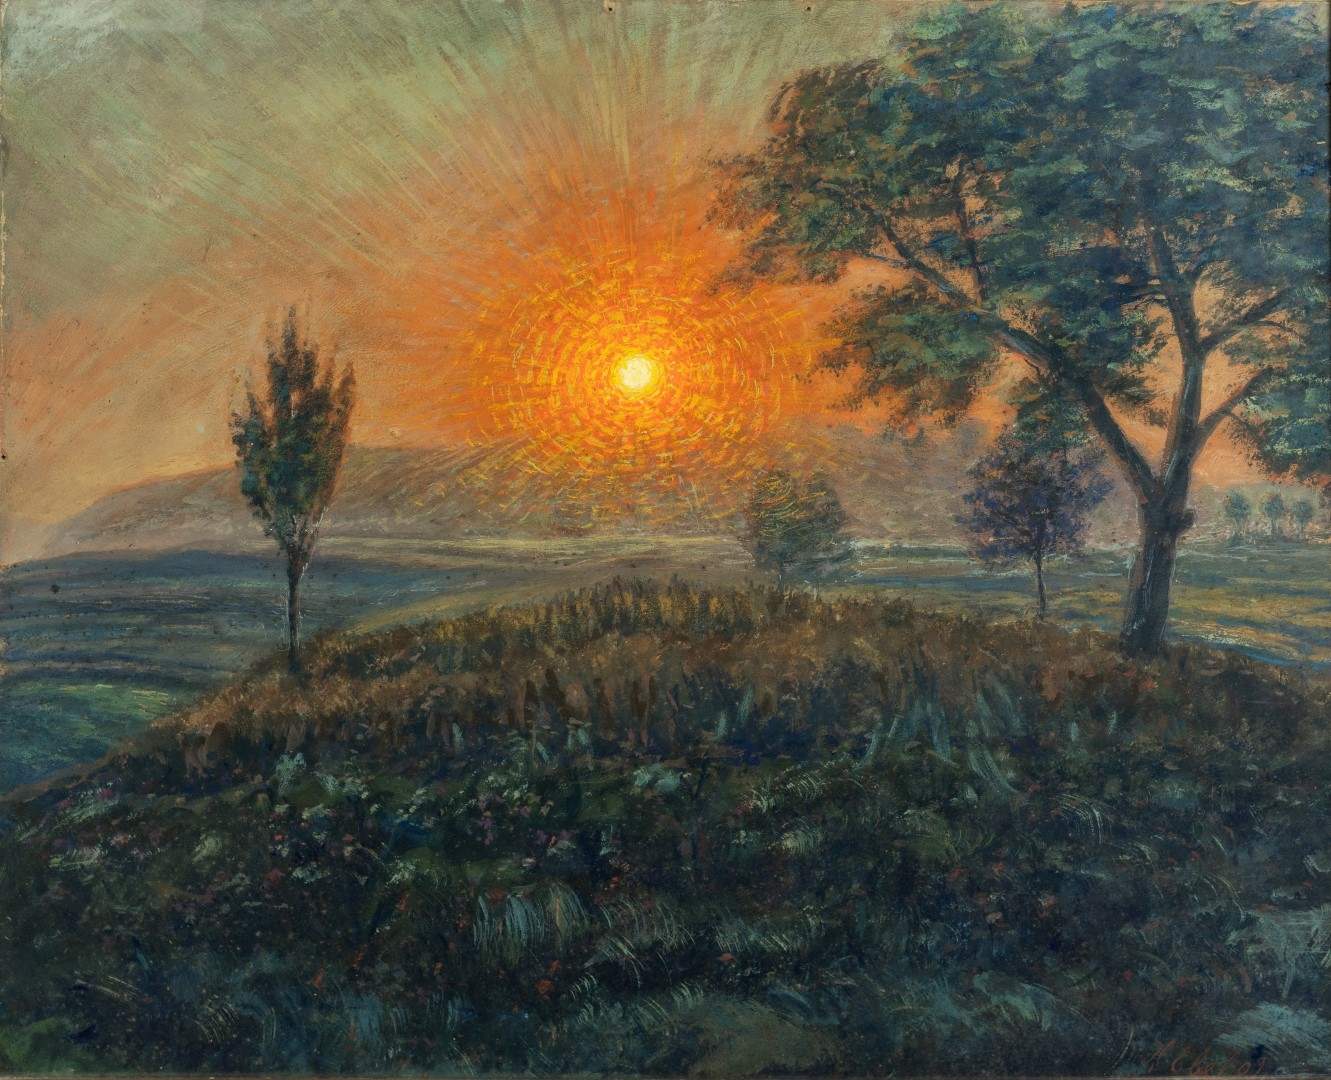 Lever de soleil avec arbre, 1909, tempera sur carton,78x92 cm, collection particulière.